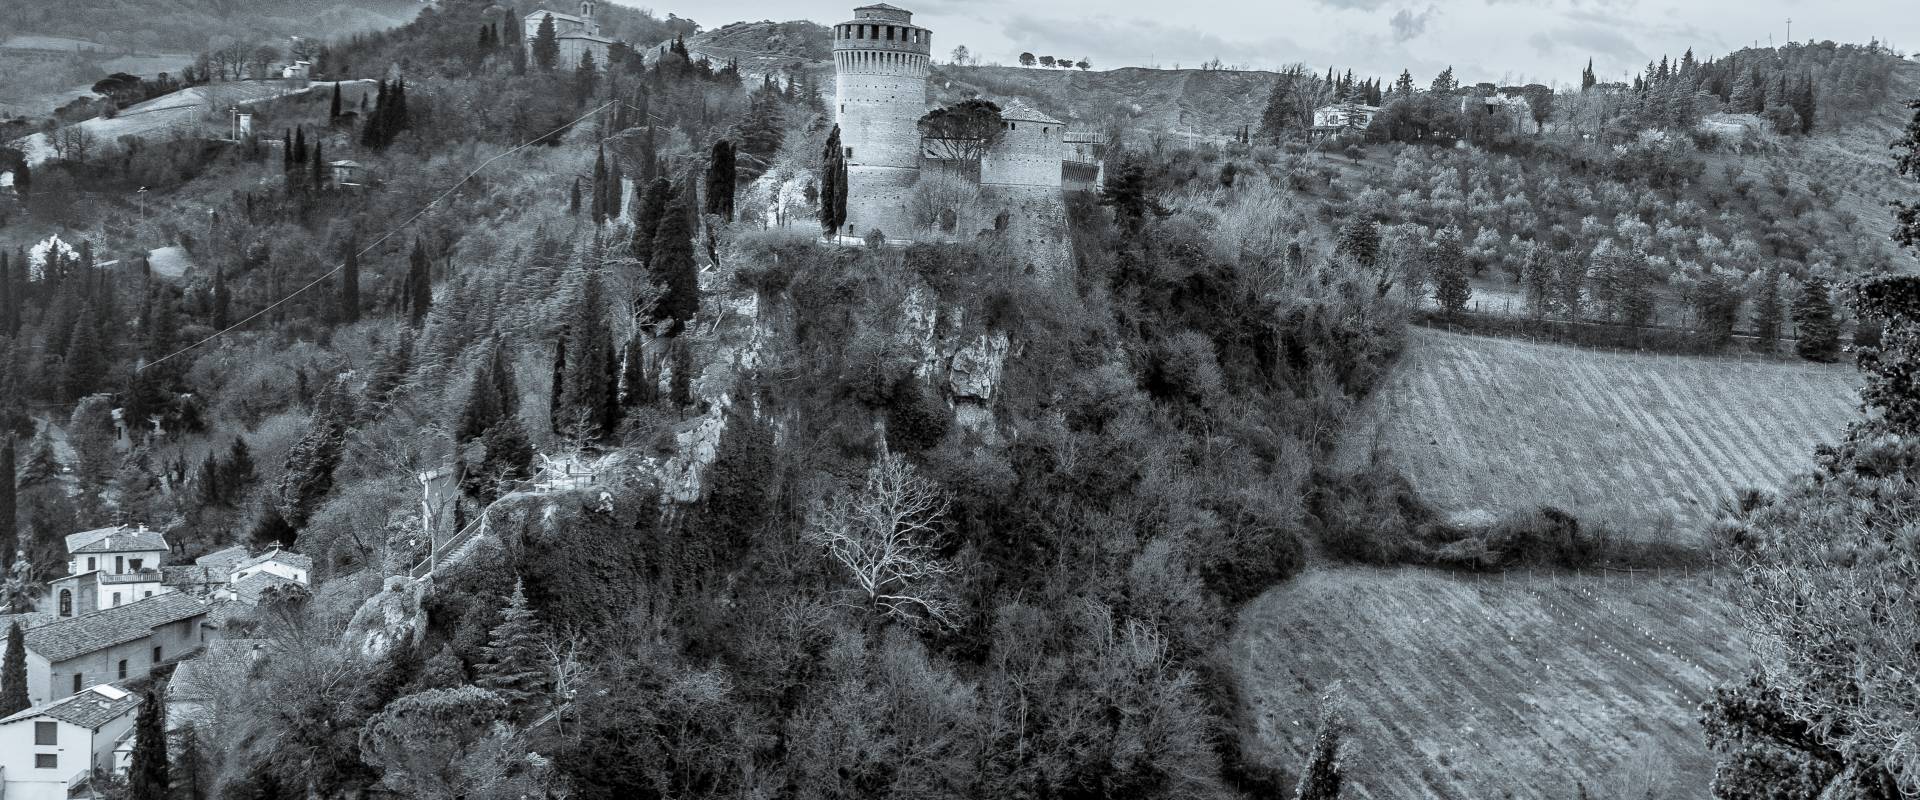 Rocca di Brisighella -- photo by Vanni Lazzari